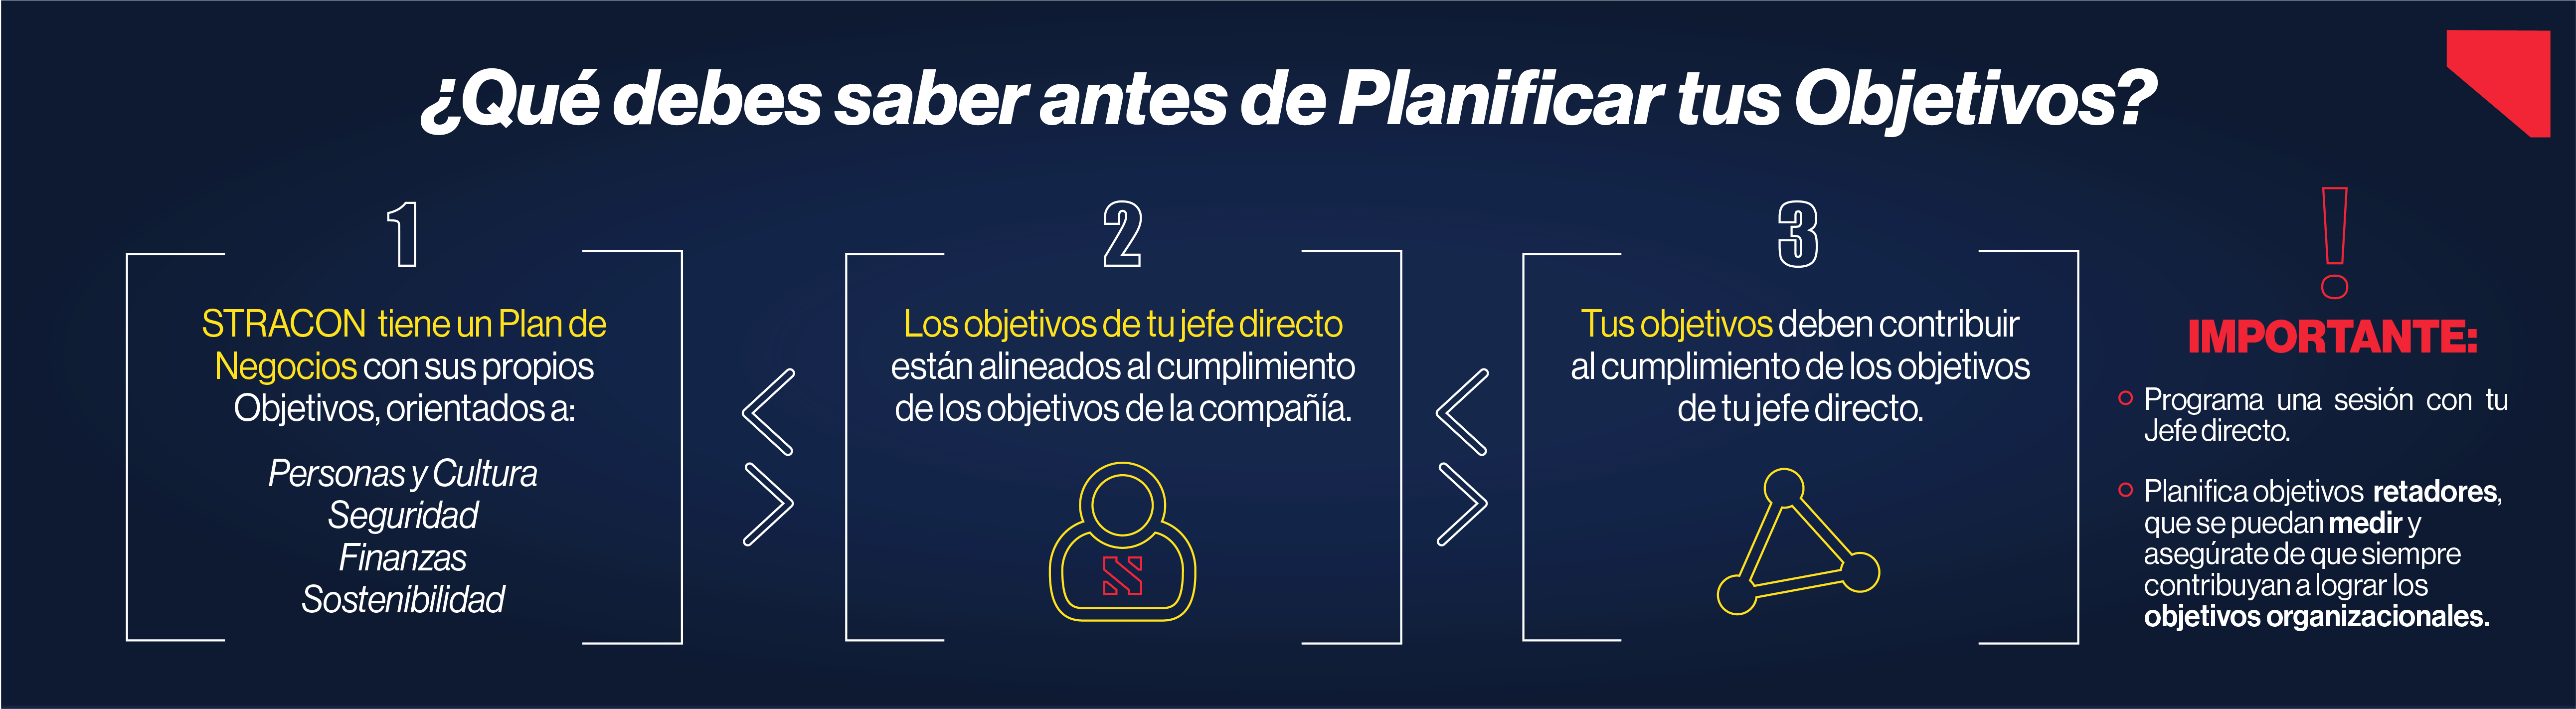 Plan de Objetivos - Stracon.png  by andreaespinoza